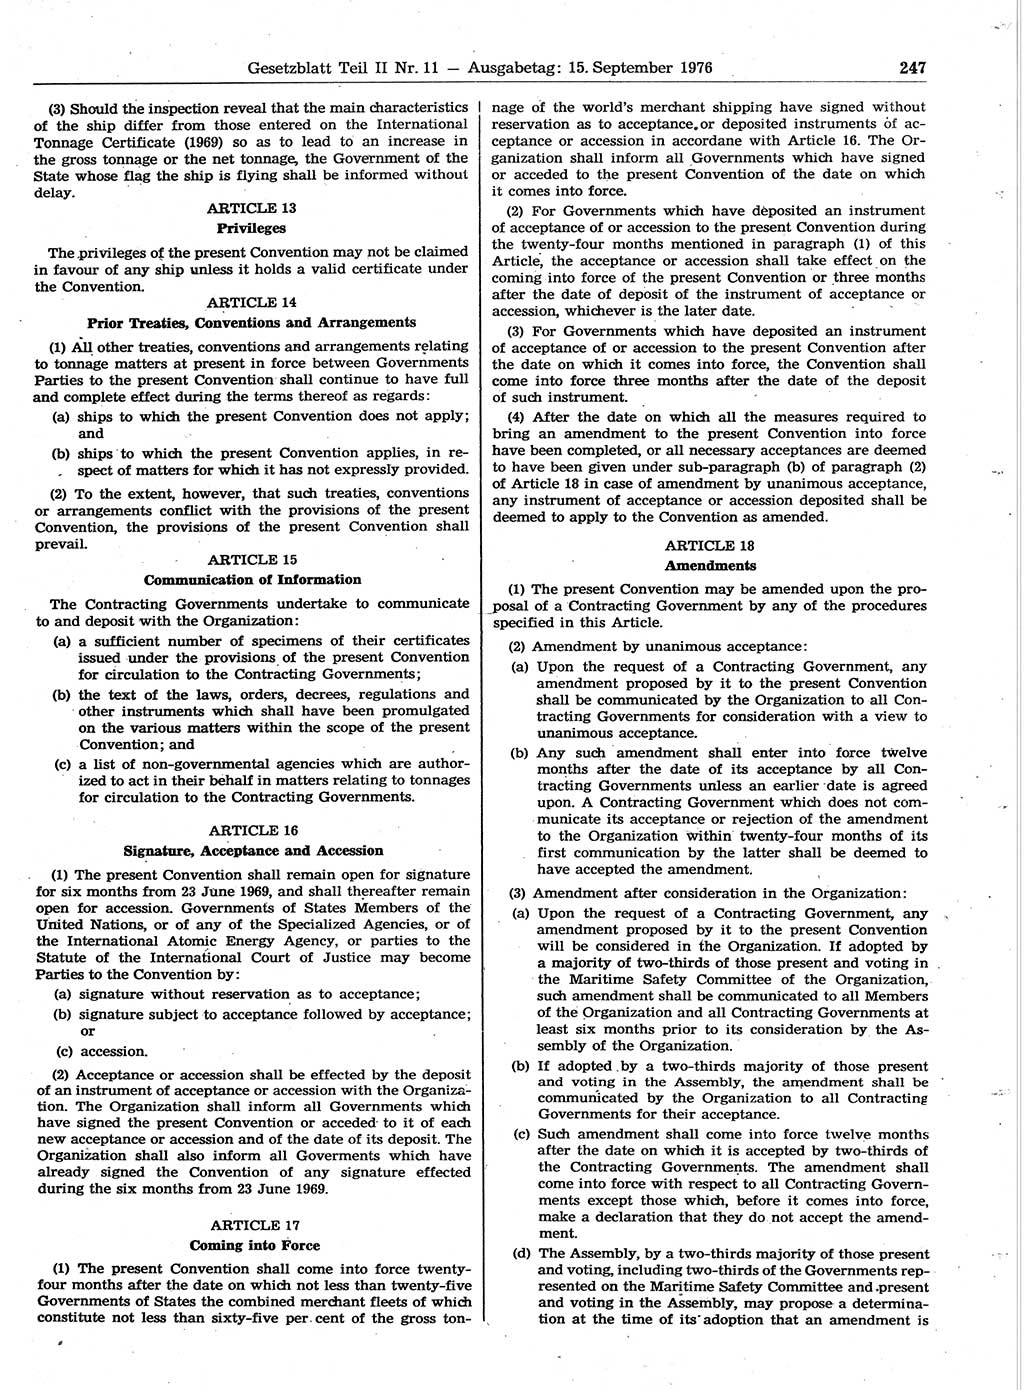 Gesetzblatt (GBl.) der Deutschen Demokratischen Republik (DDR) Teil ⅠⅠ 1976, Seite 247 (GBl. DDR ⅠⅠ 1976, S. 247)